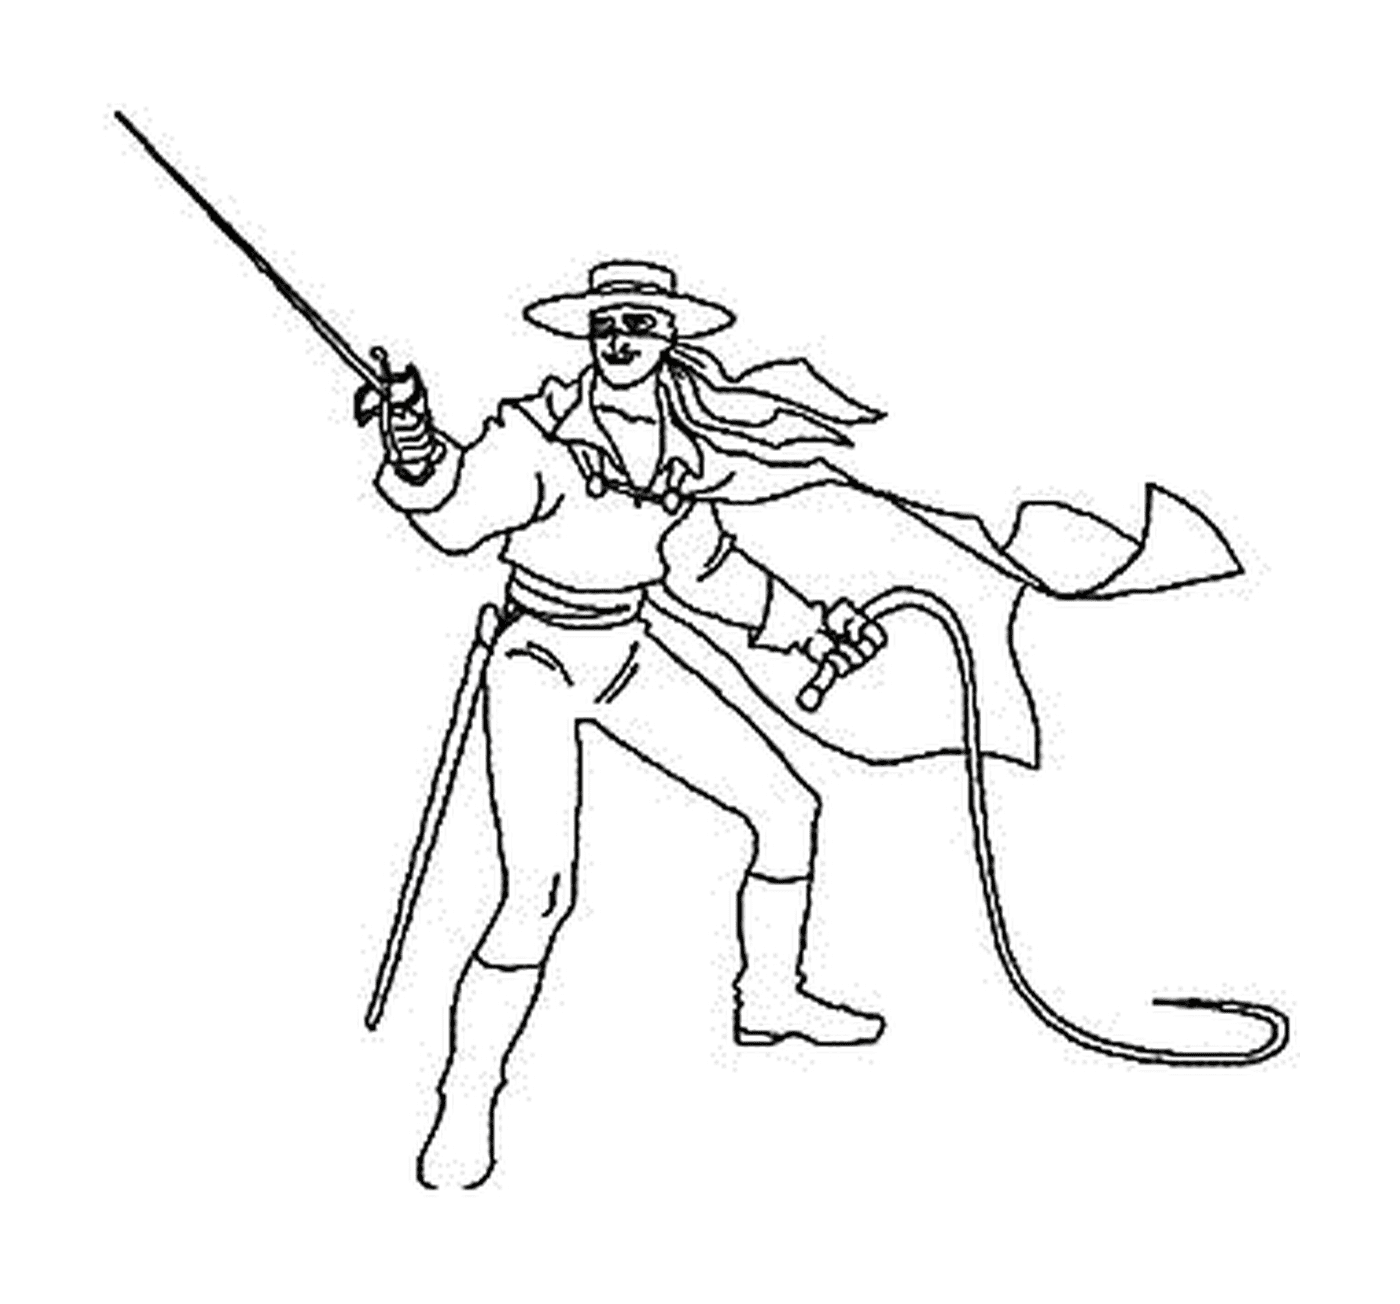  Zorro con su látigo y su espada 